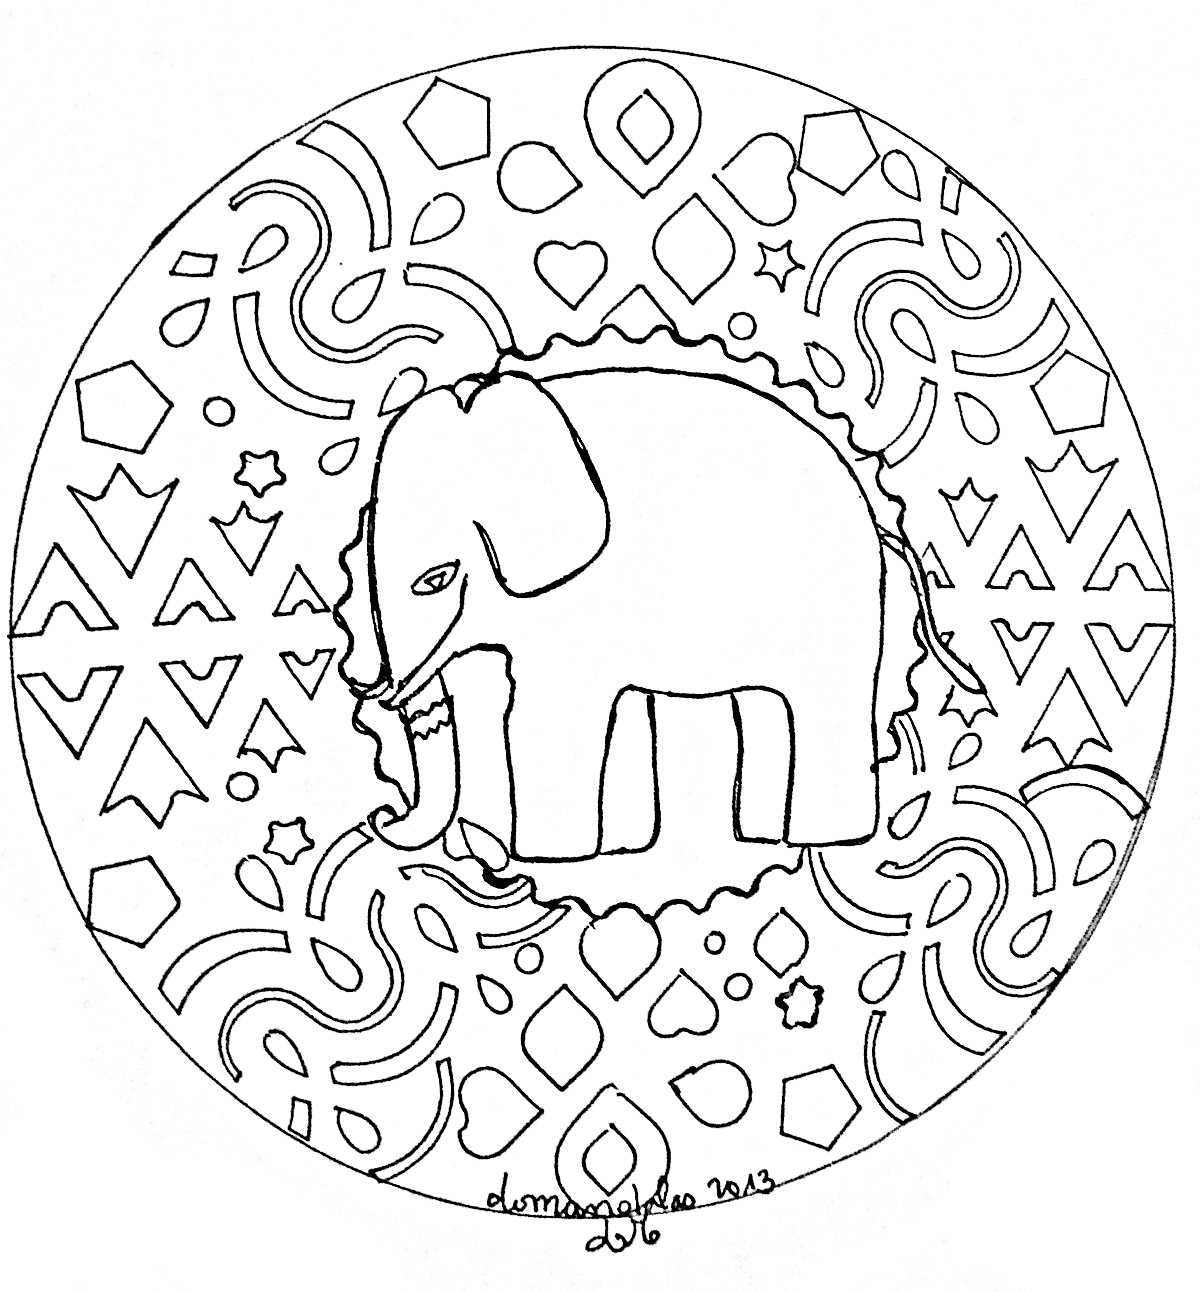 Dettagli relativamente facili da colorare, per un Mandala 'elefante' originale e di alta qualità.